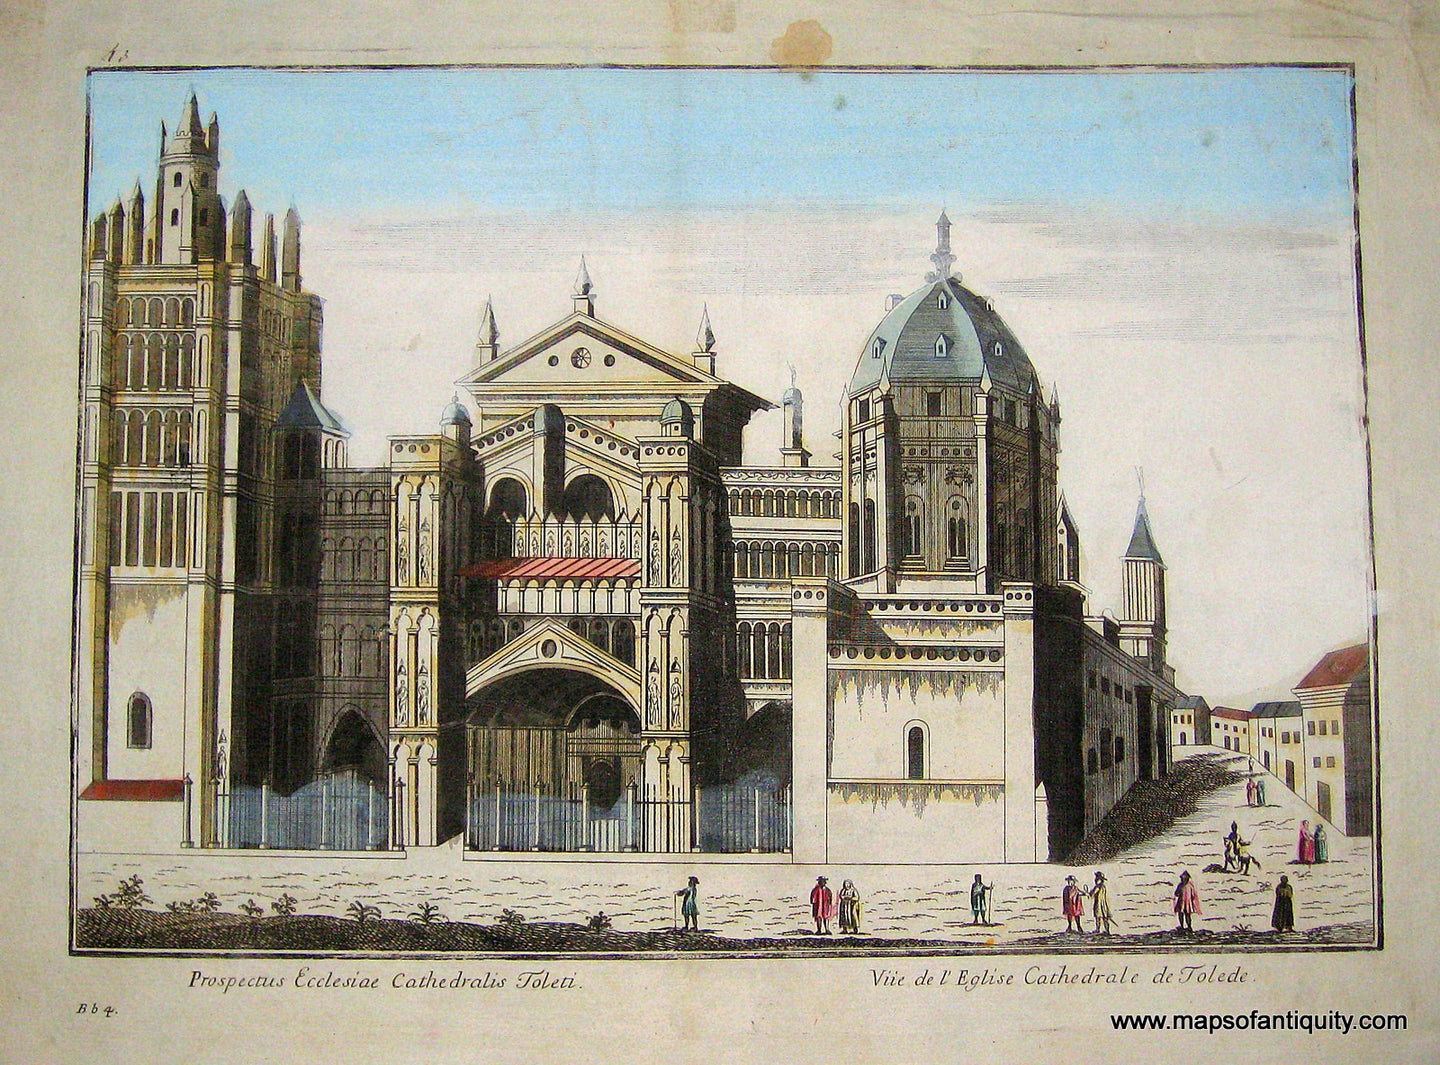 Hand-Colored-Engraved-Antique-Illustration-Vue-d'Optique-Prospectus-Ecclesiae-Cathedralis-Toleti-Toledo-Spain-Europe-Spain-C.-1750--Maps-Of-Antiquity